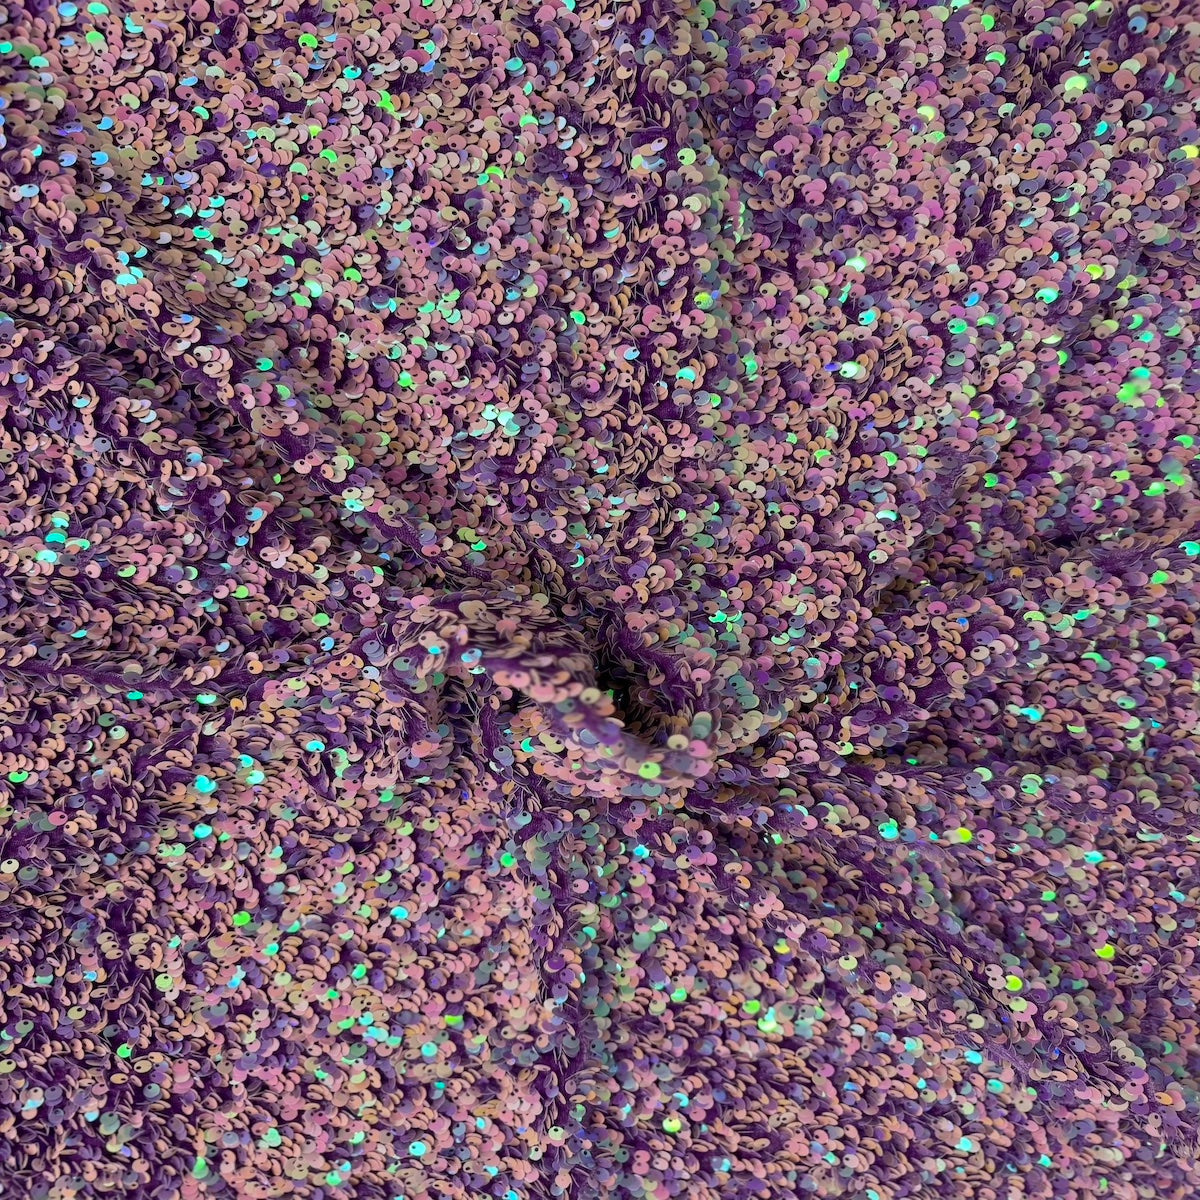 Tissu de rodéo en velours extensible brodé de paillettes irisées lavande foncé